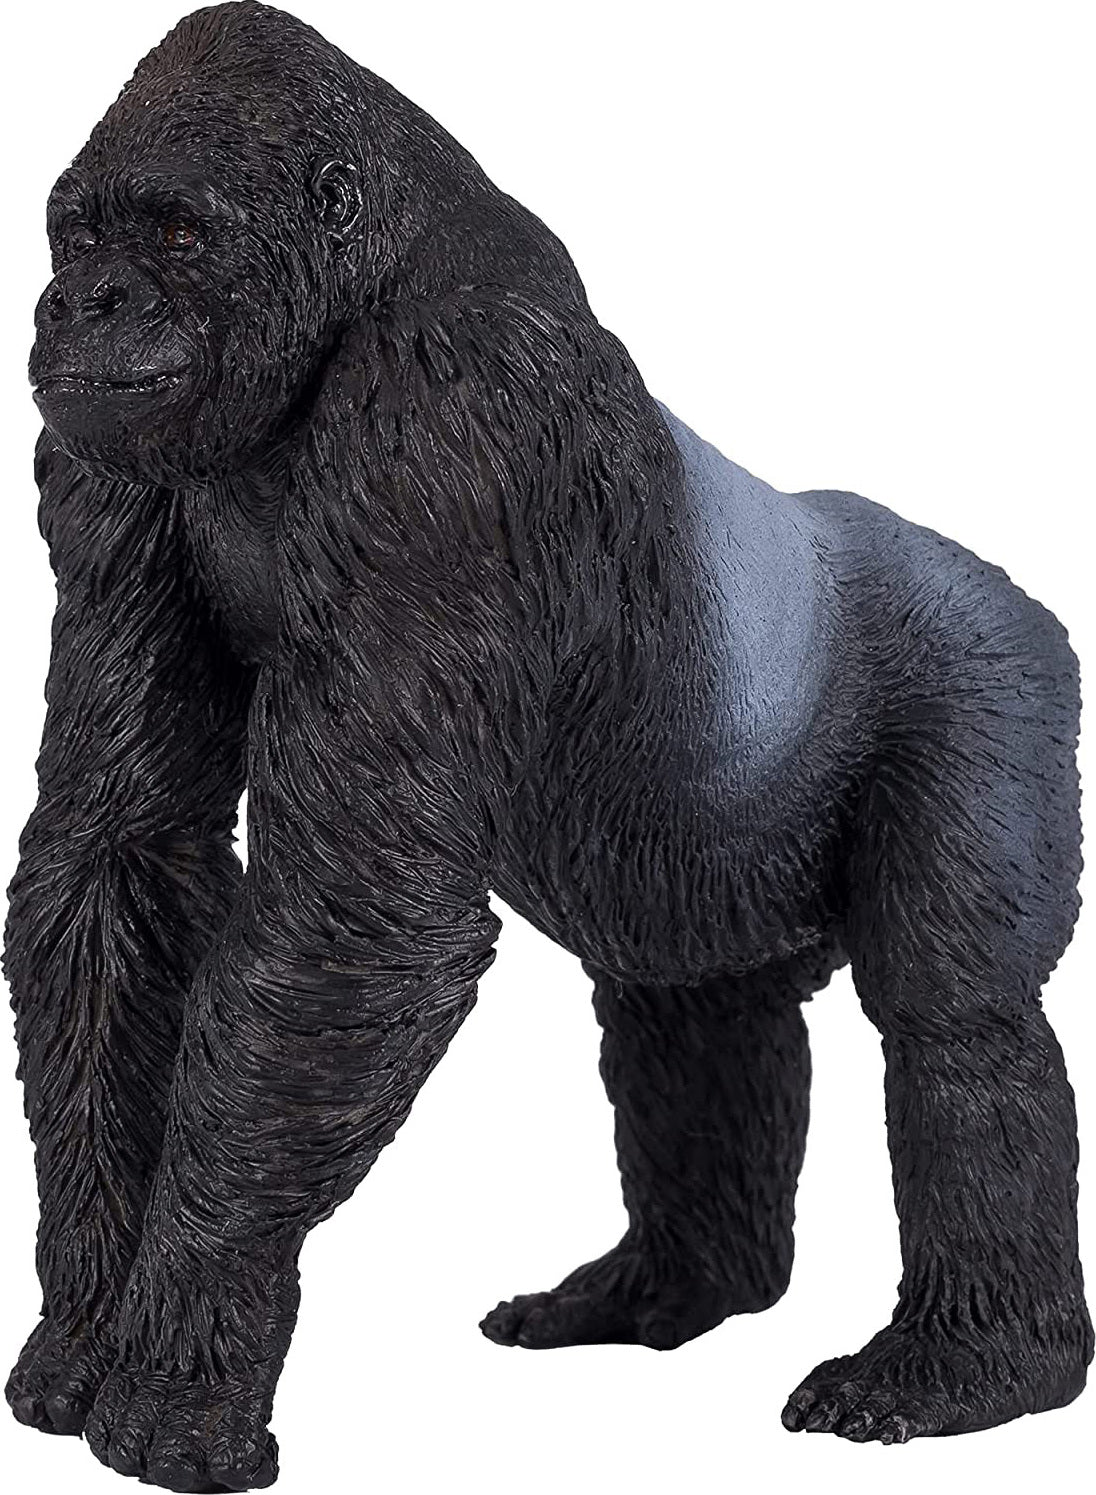 Gorilla (Silverback, walking)